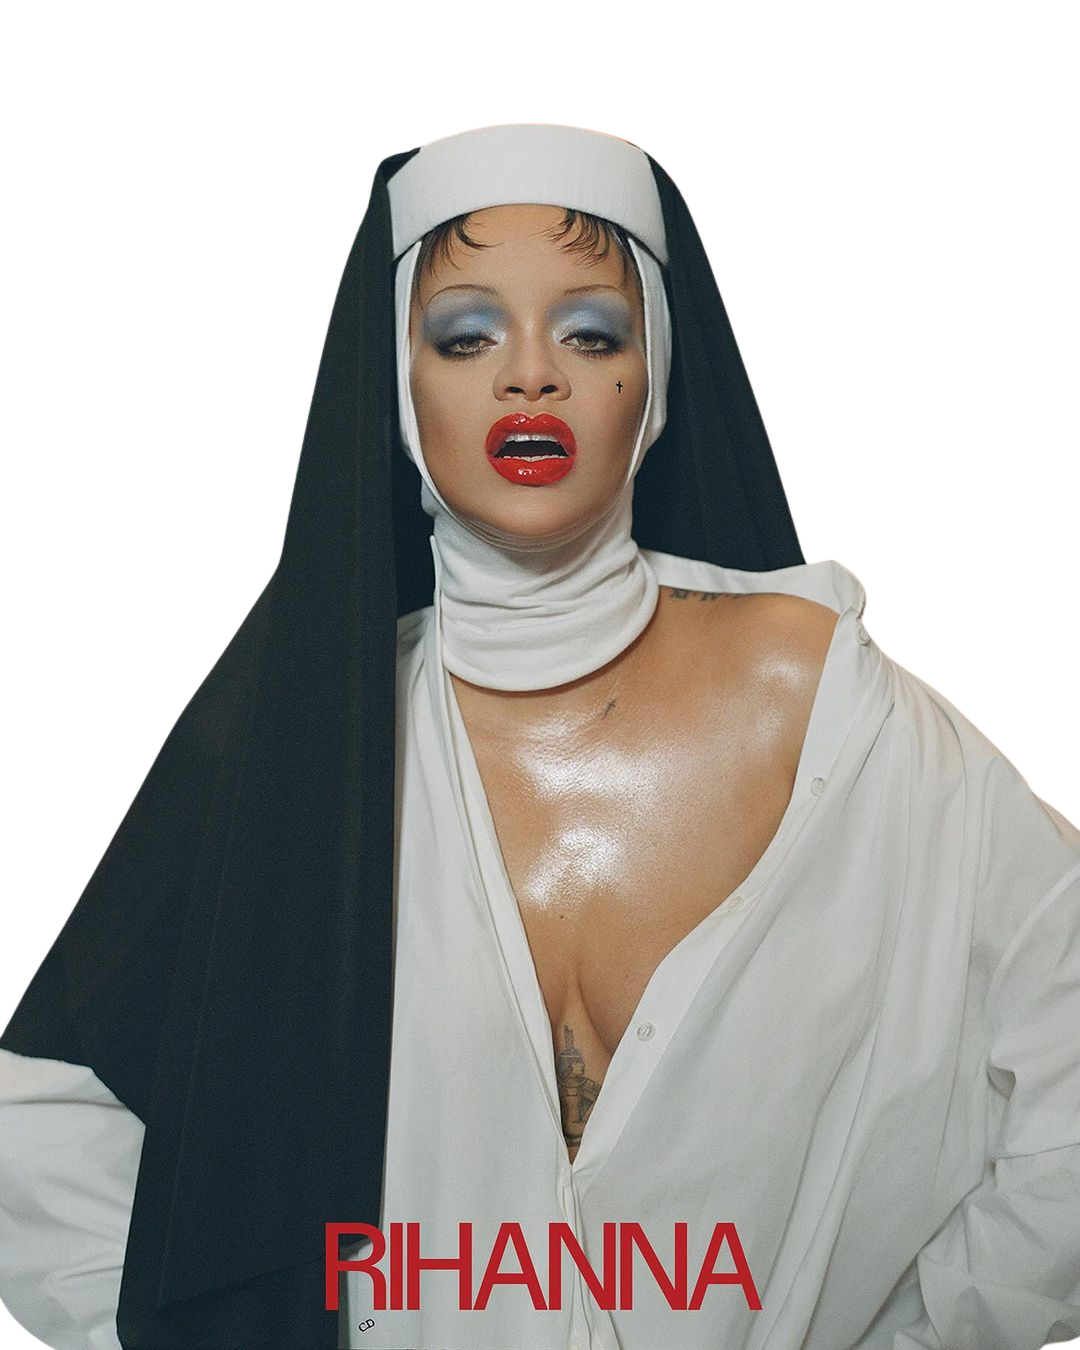 En los últimos años, Rihanna ha estado en su <i>business era</i>, ganando bastante reconocimiento en el mundo de la belleza y moda con su marca Fenty. Si bien amamos esta faceta de la estrella (al igual que sus productos), muchos de sus fans esperan con ansias un nuevo proyecto musical, puesto que su último lanzamiento fue en 2016. Parece que la cantante escuchó el llamado de sus admiradores, y habló con Interview Magazine sobre su próximo álbum y su enfoque único hacia la música, mientras exploran temas de moda, identidad y su impacto cultural.